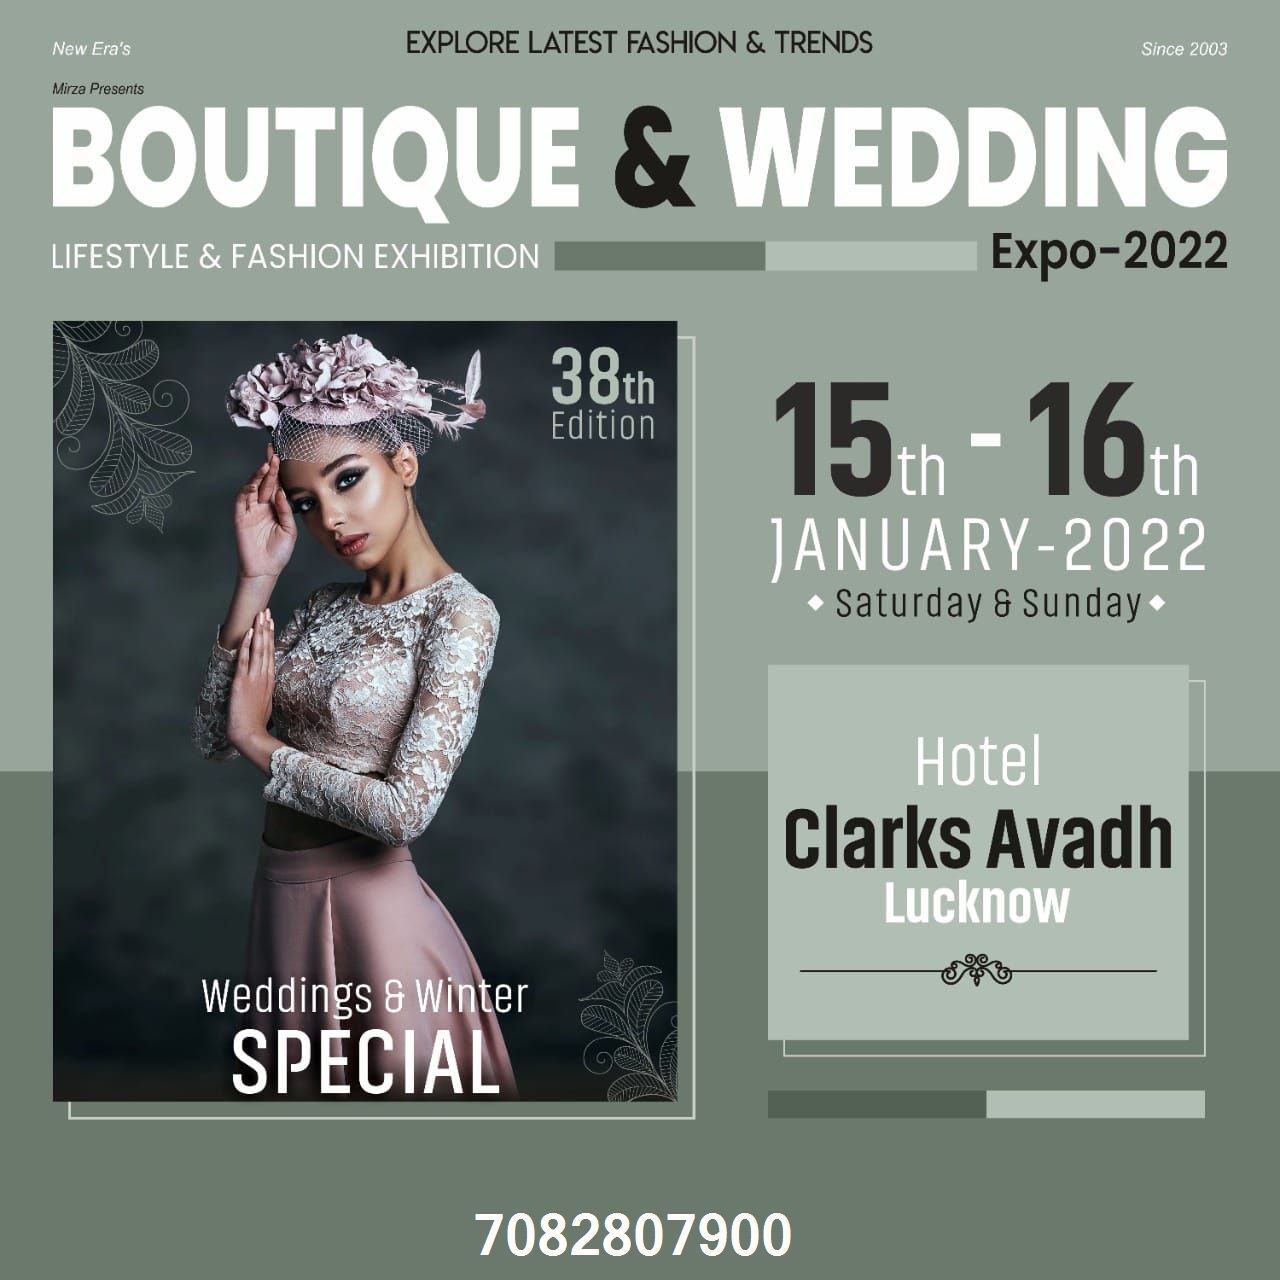 Boutique & Wedding Expo